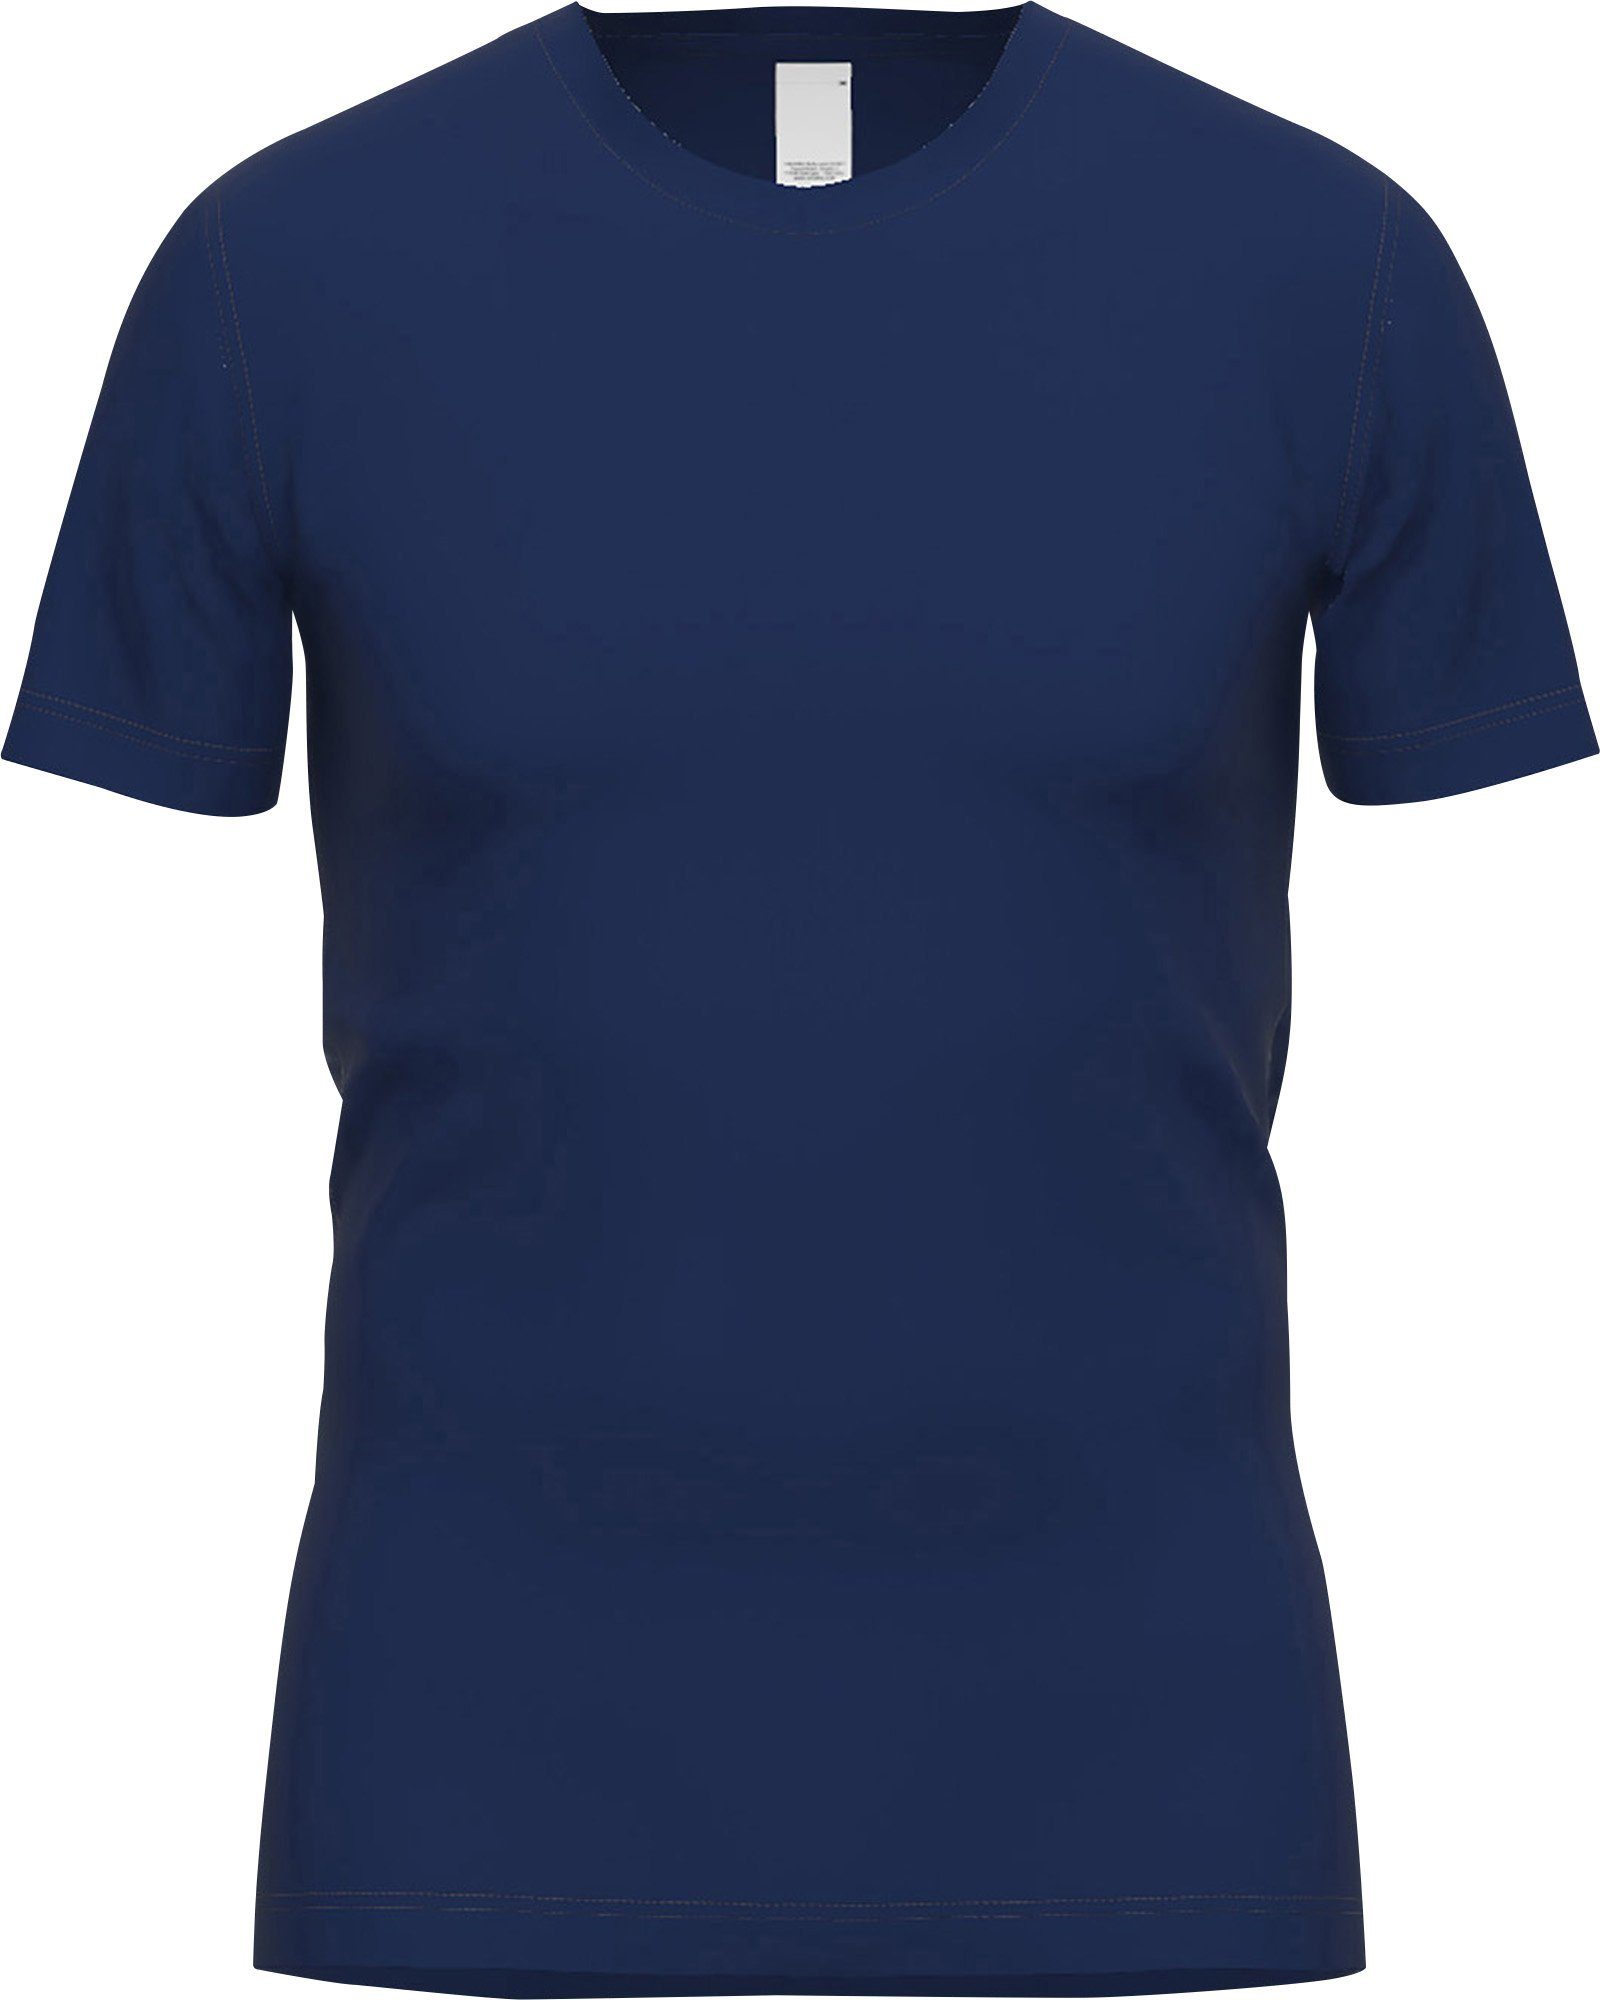 GÖTZBURG Unterhemd Herren-Thermo-Unterhemd, 1/2-Arm Interlock-Jersey Uni blau-dunkel